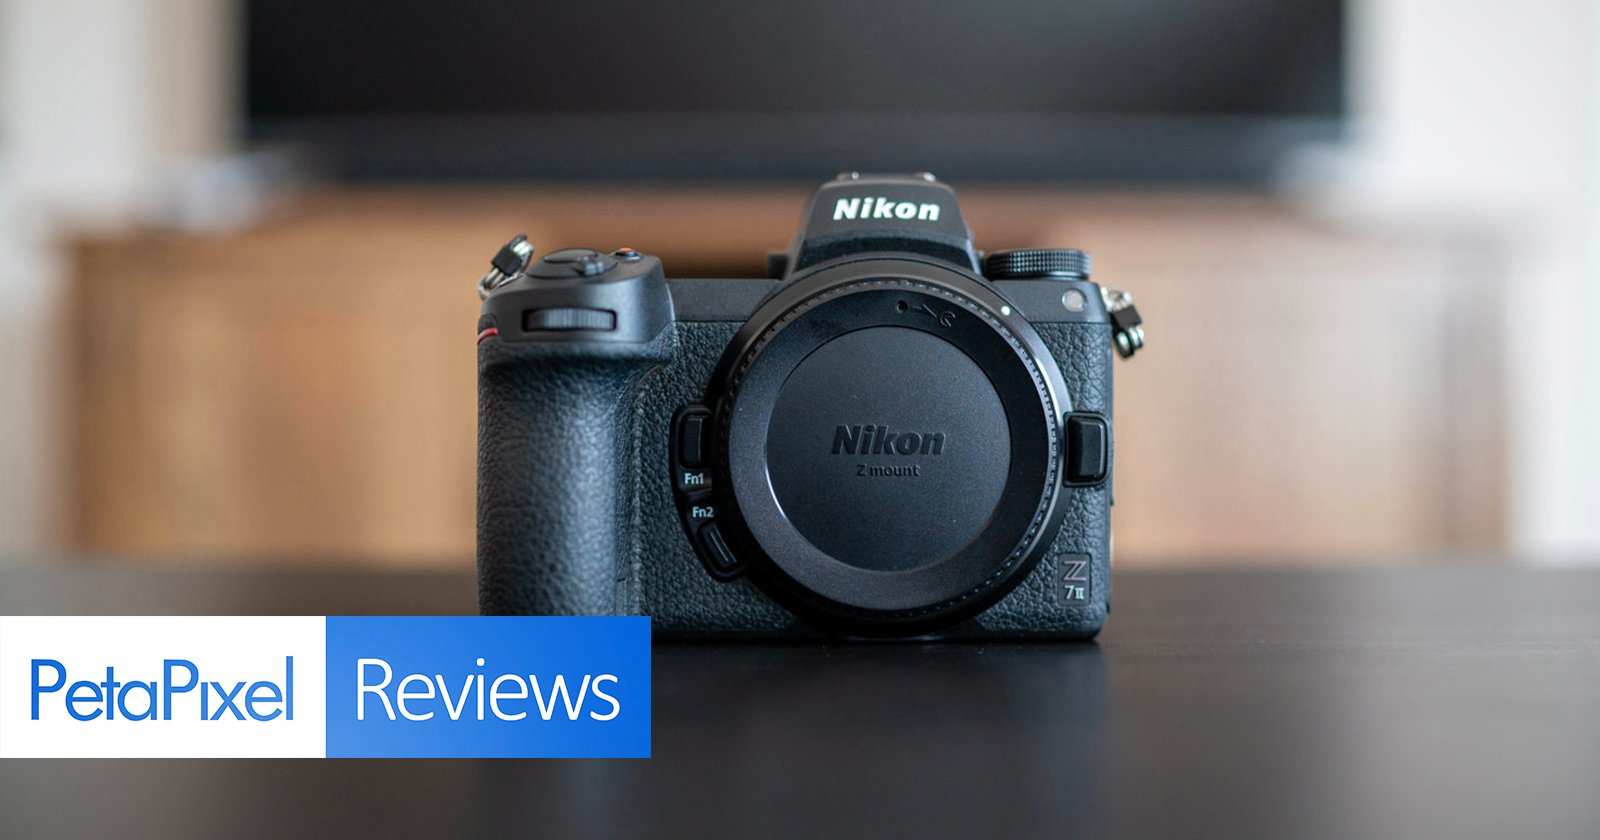 Nikon Z6 review so far